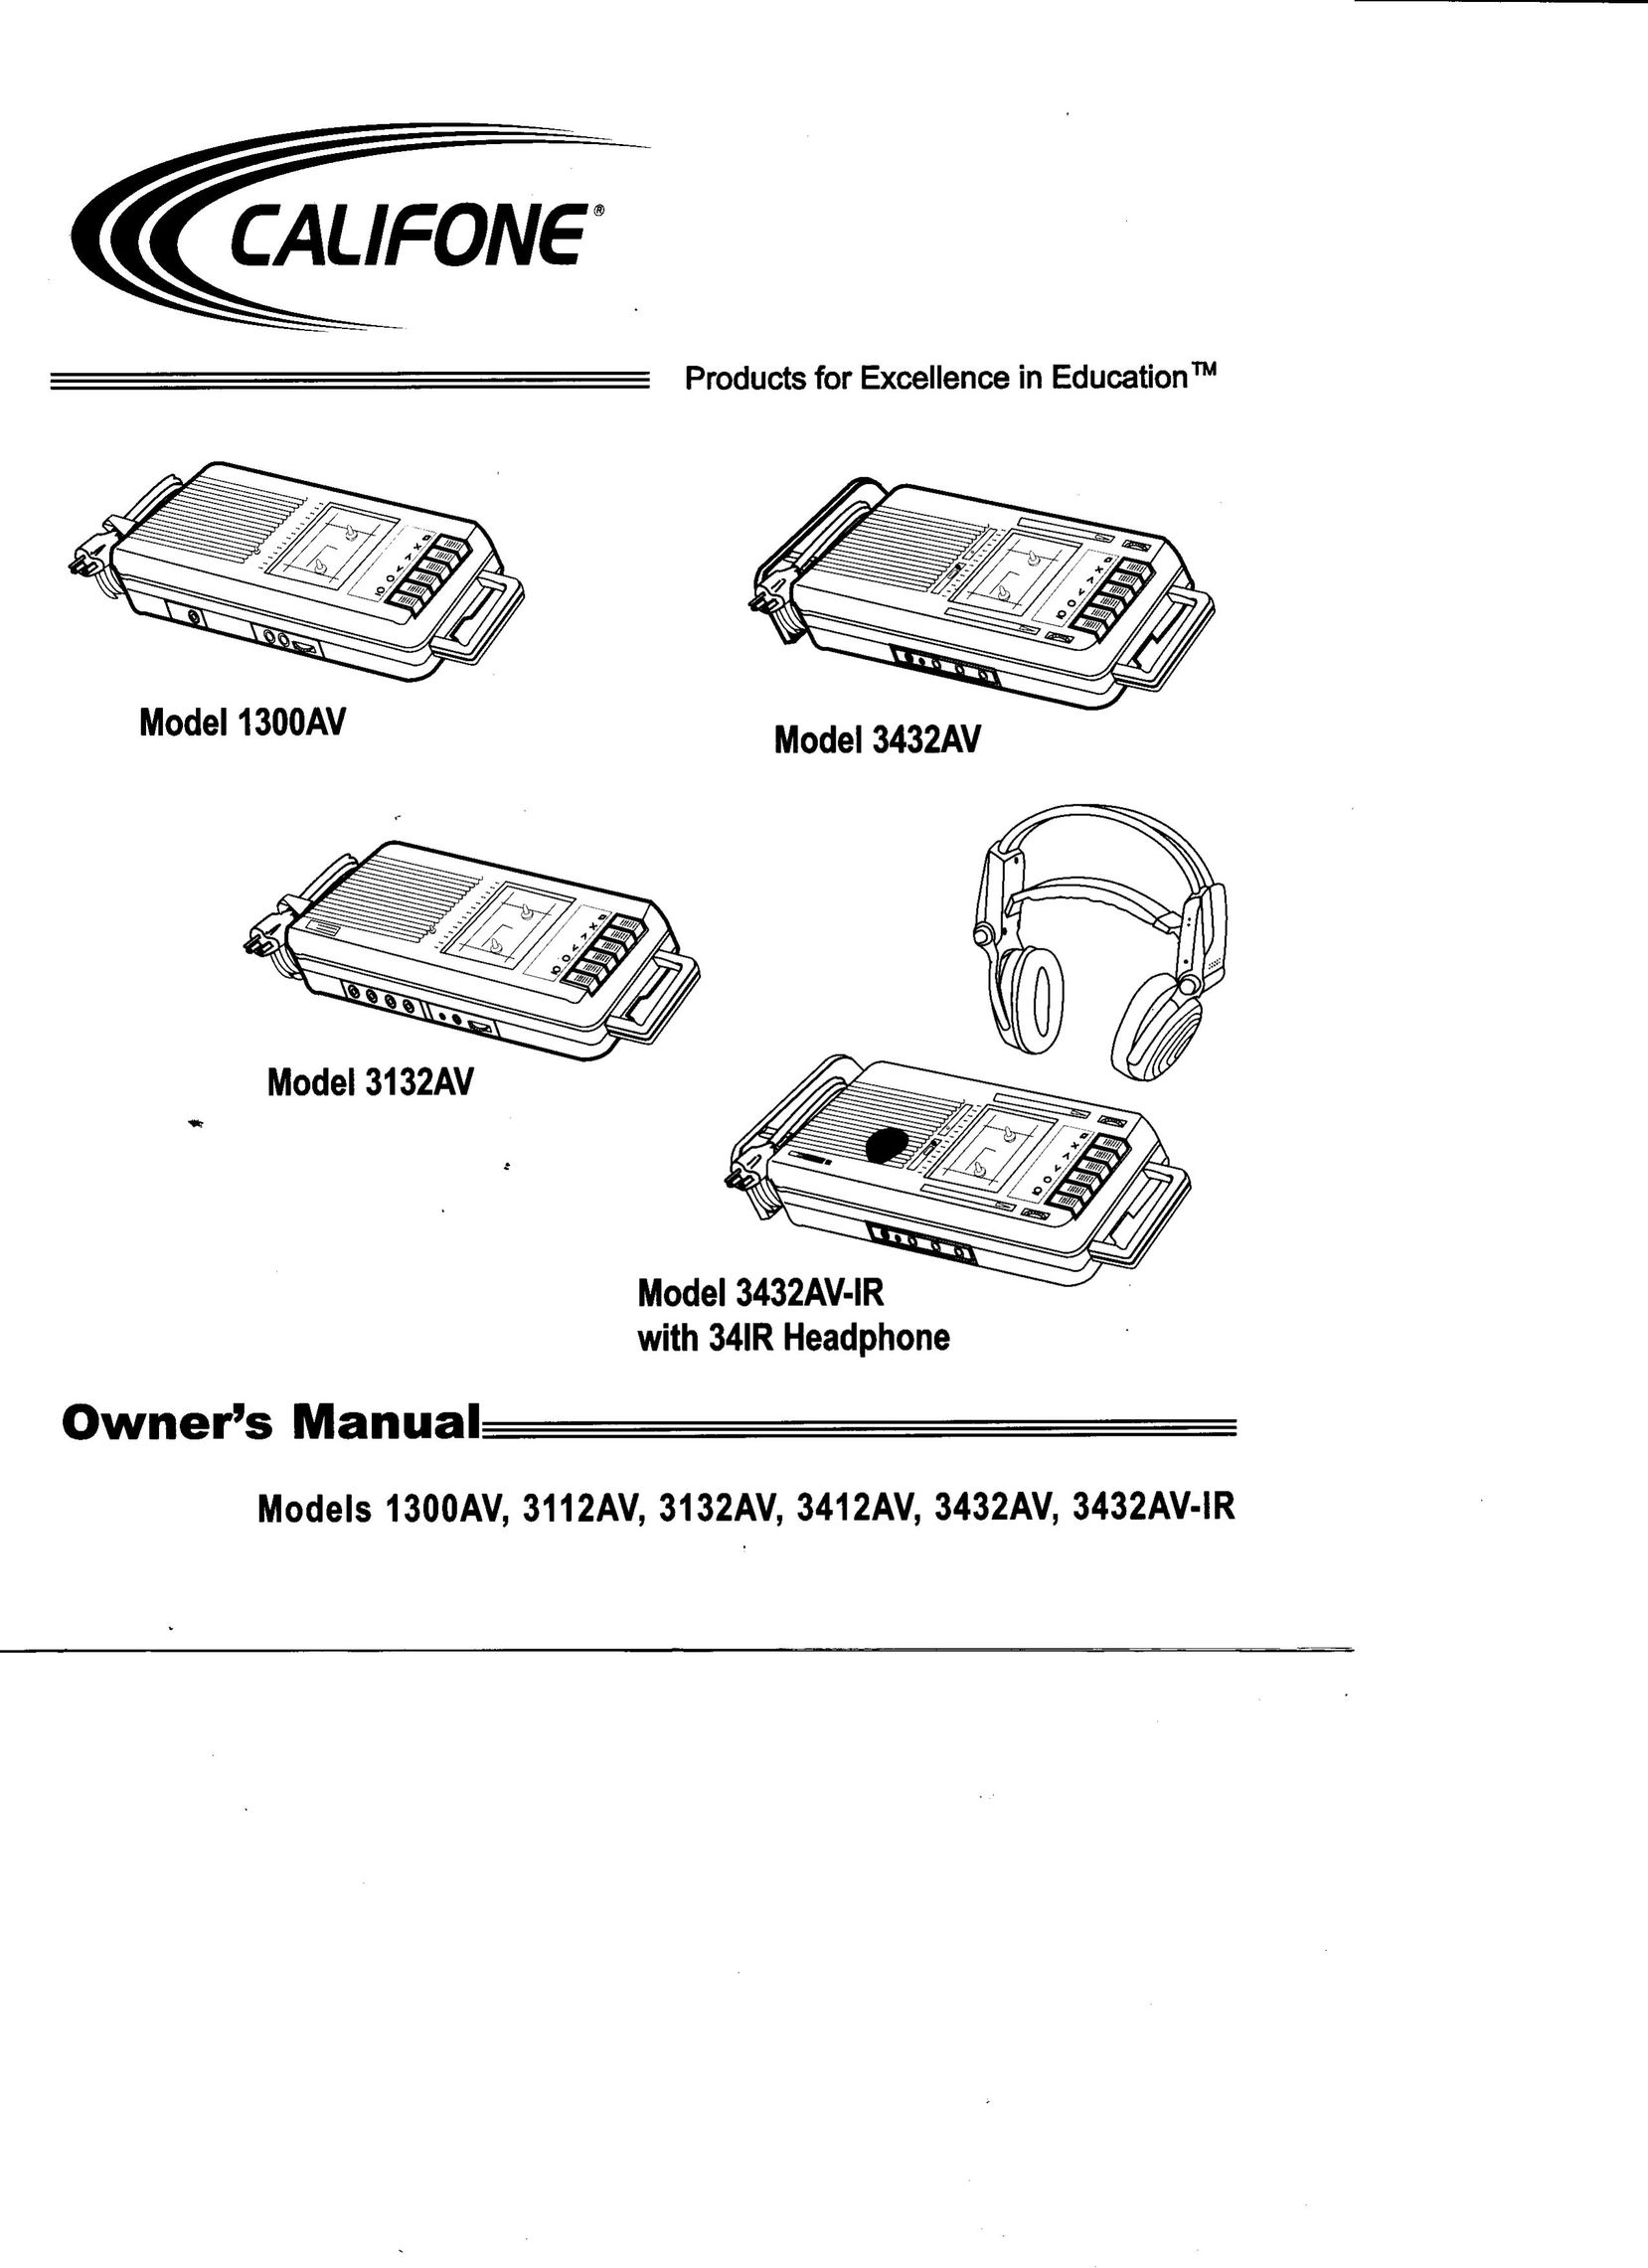 Califone 3412AV Cassette Player User Manual (Page 1)